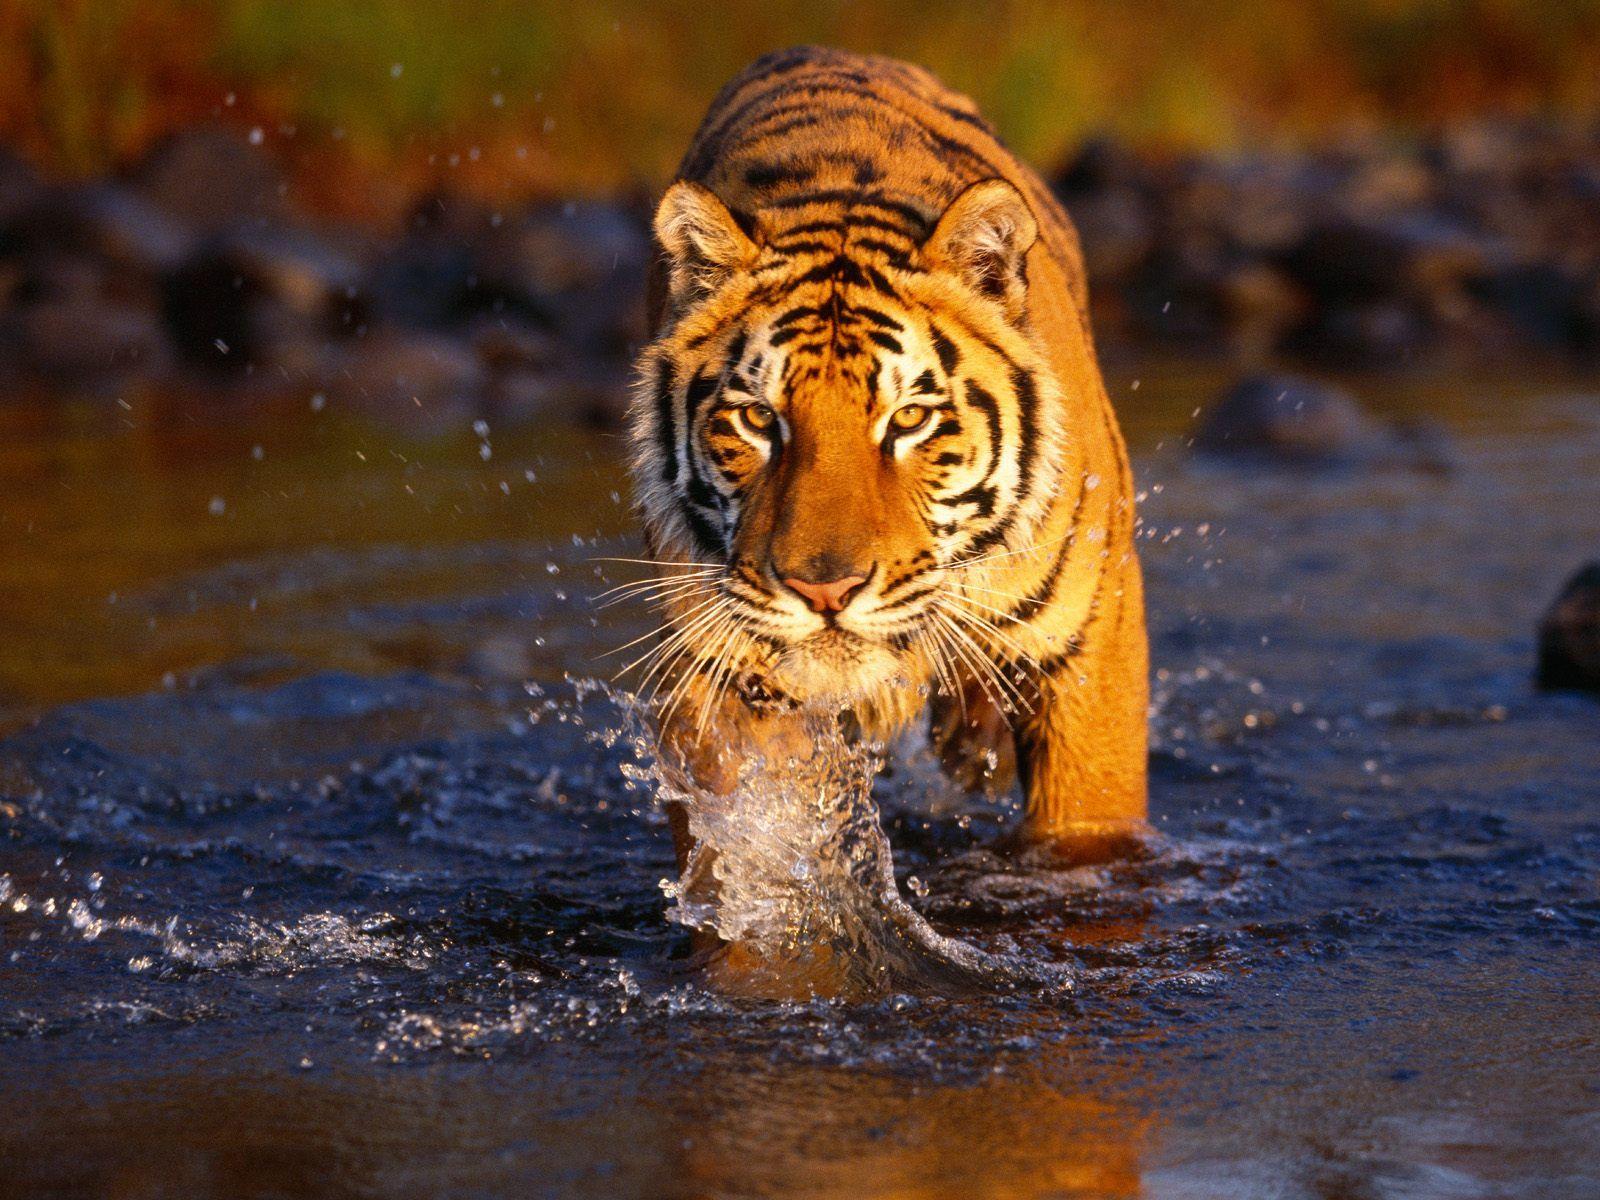 Unique Animals blogs: Tigers Wallpaper, Tiger Wallpaper